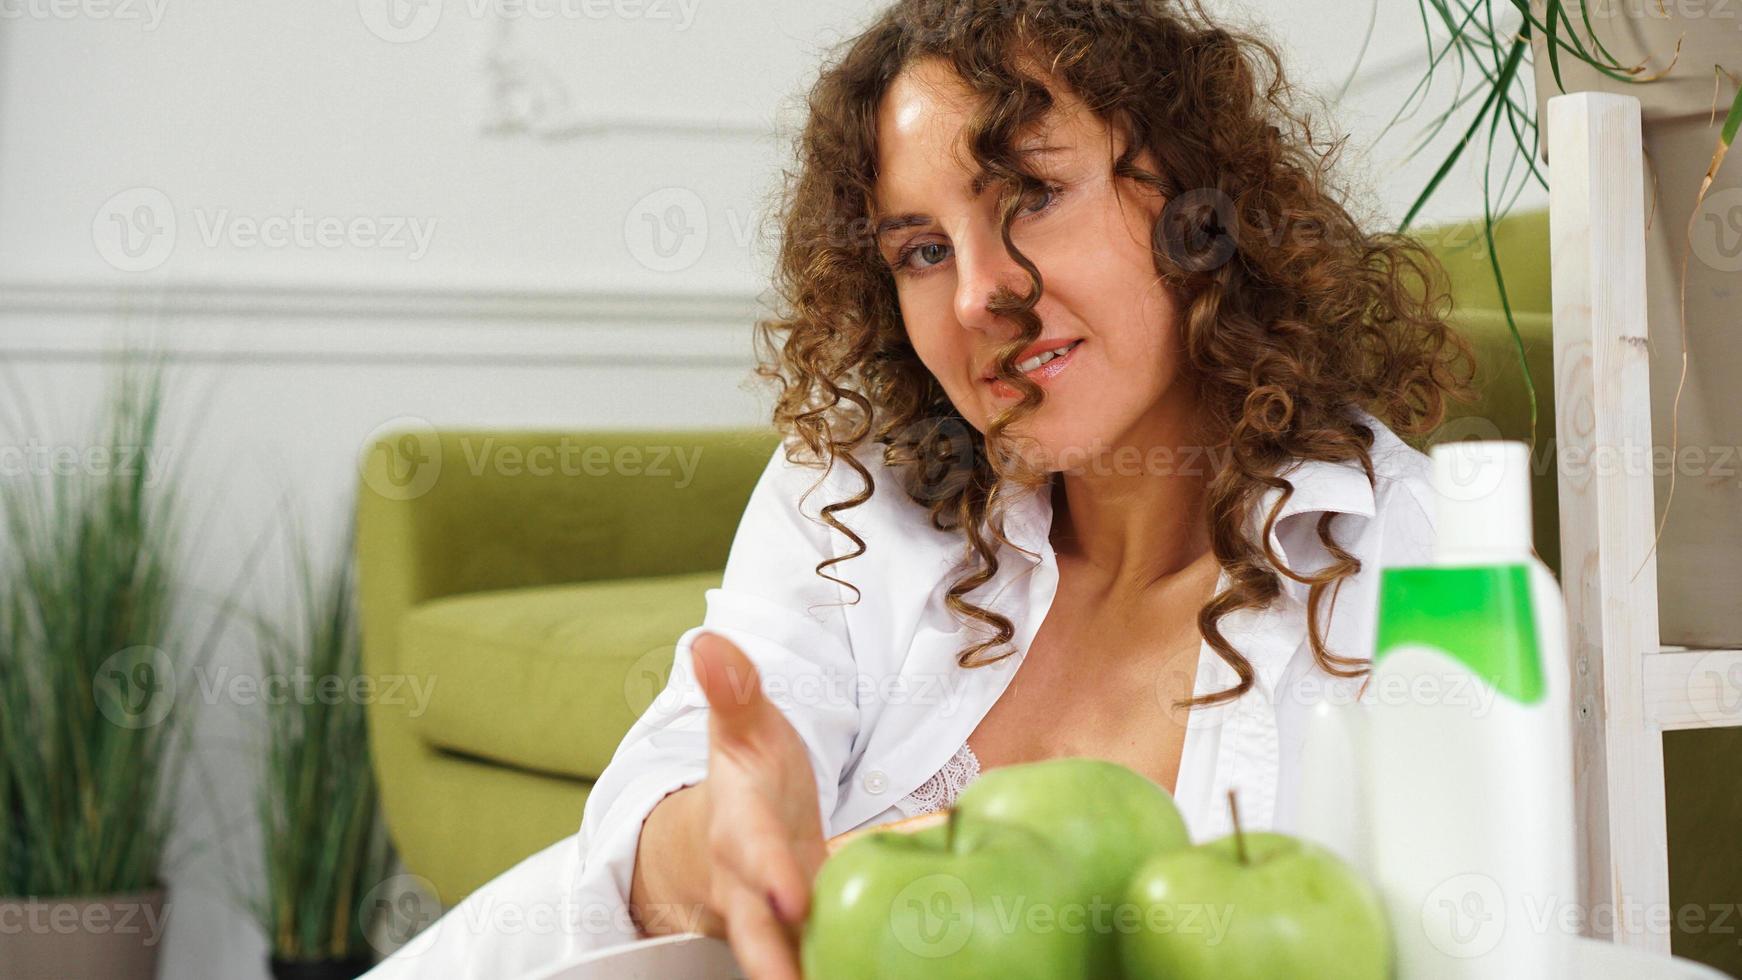 vrouw met krullend haar in de kamer met groene bank. appels en biologische zorg foto